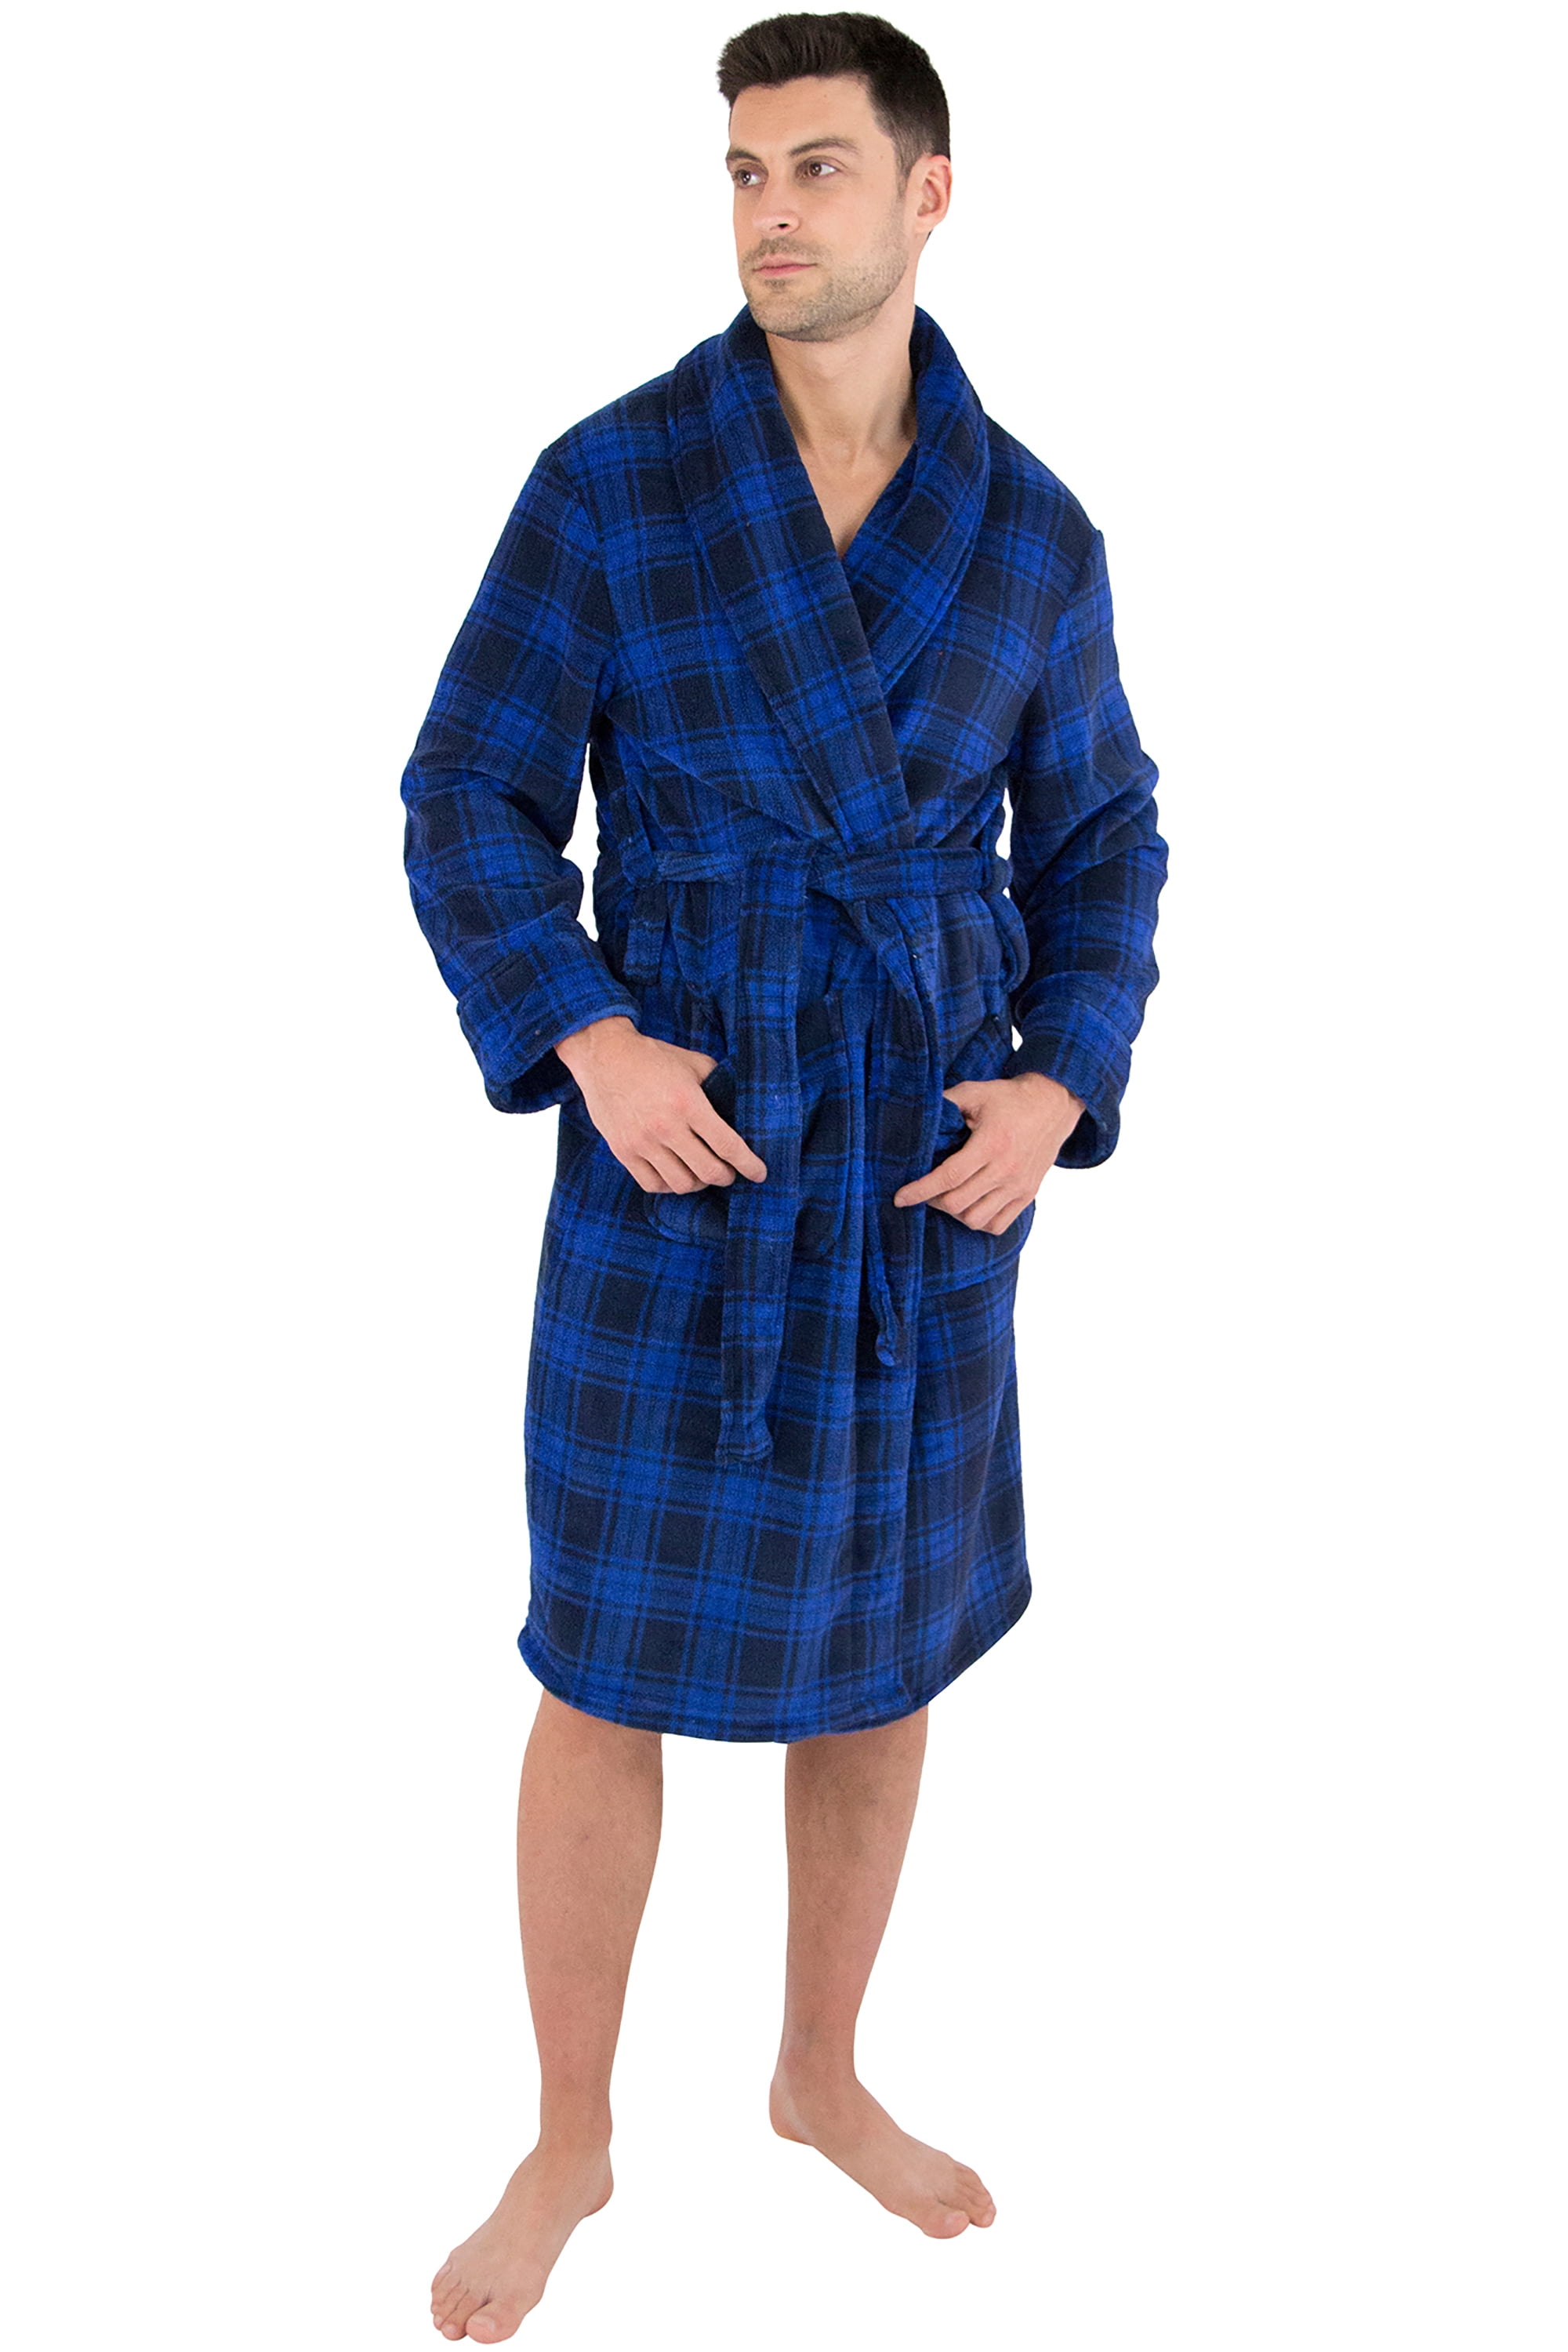 Tommy Bahama Men's Soft Plush Robe Navy Size L/XL